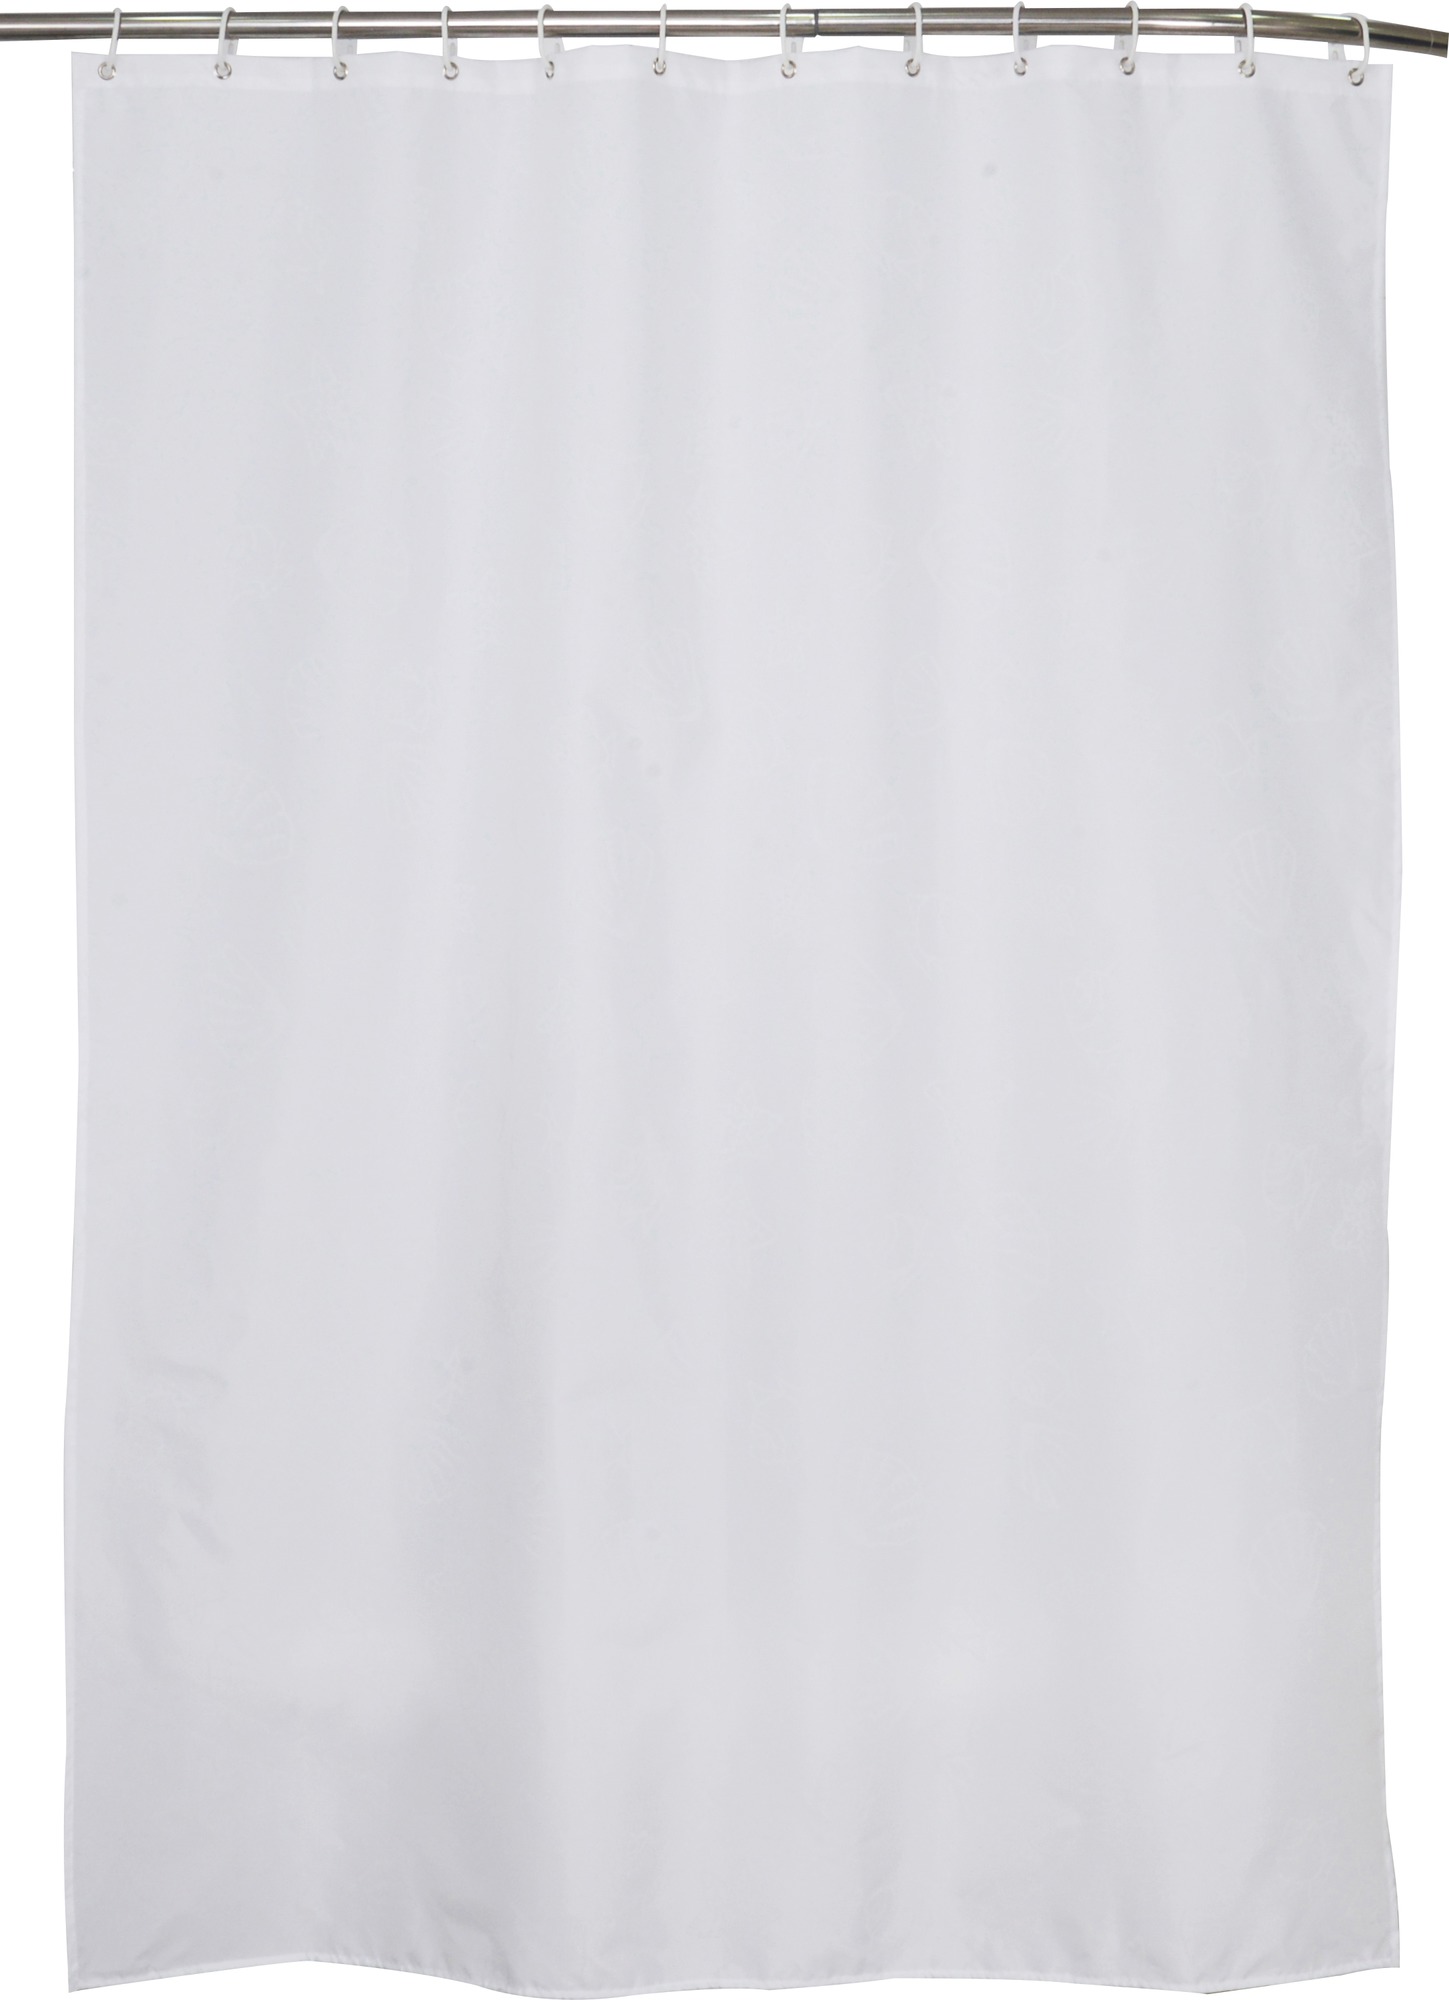 Rideau textile Arvix - Blanc - Longueur 180 cm - Hauteur 200 cm